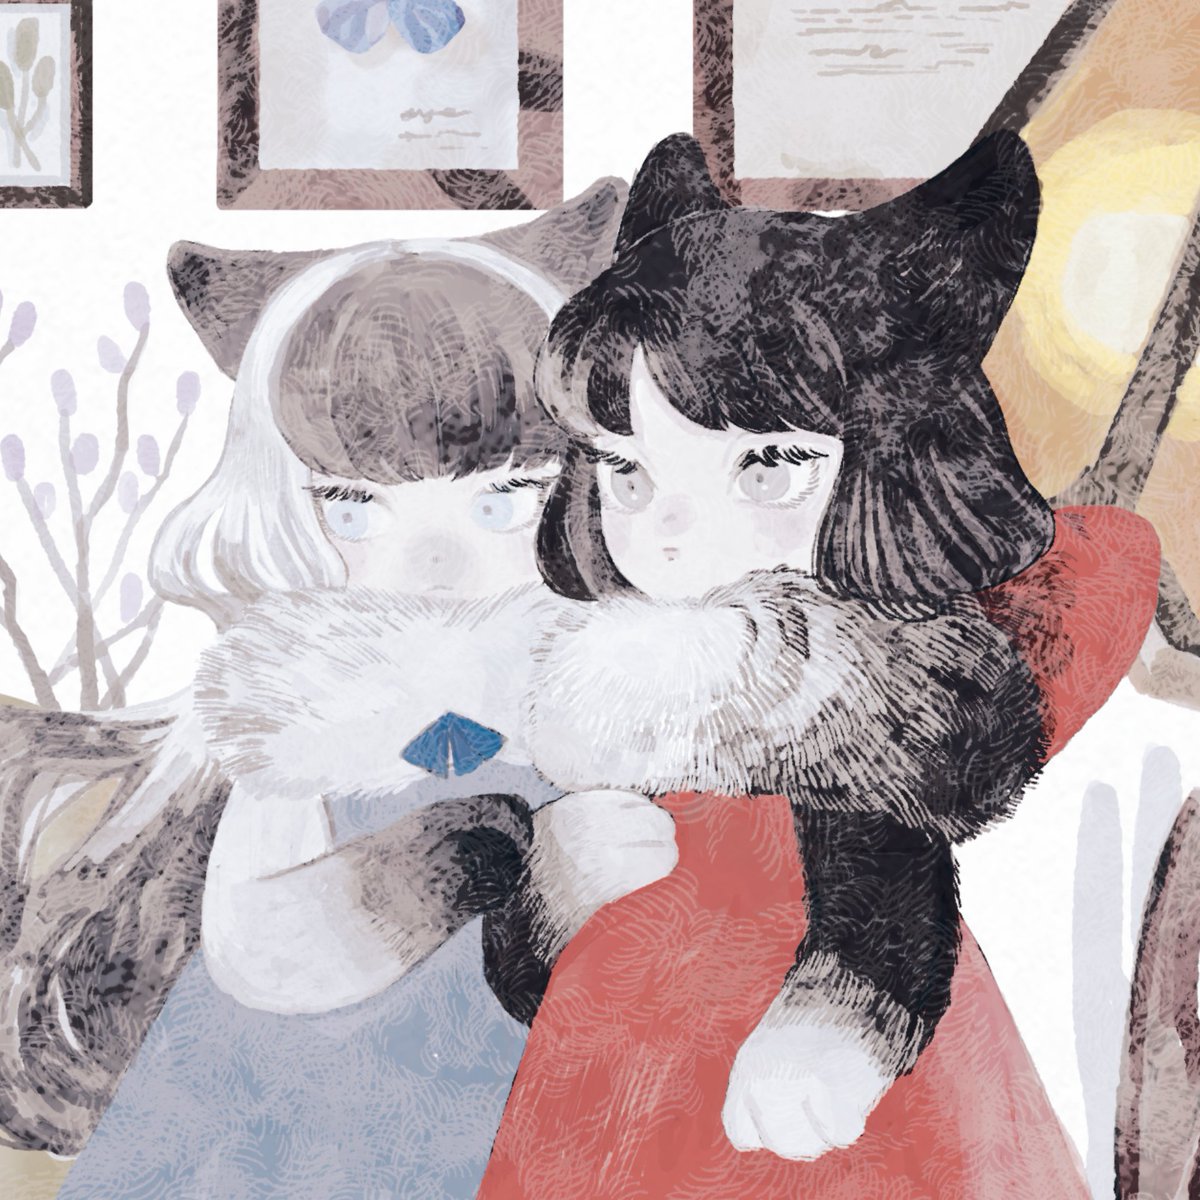 「再掲
「猫は、どんなに小さくても最高傑作である。」
#猫の日 」|山月まり Mari Yamazukiのイラスト